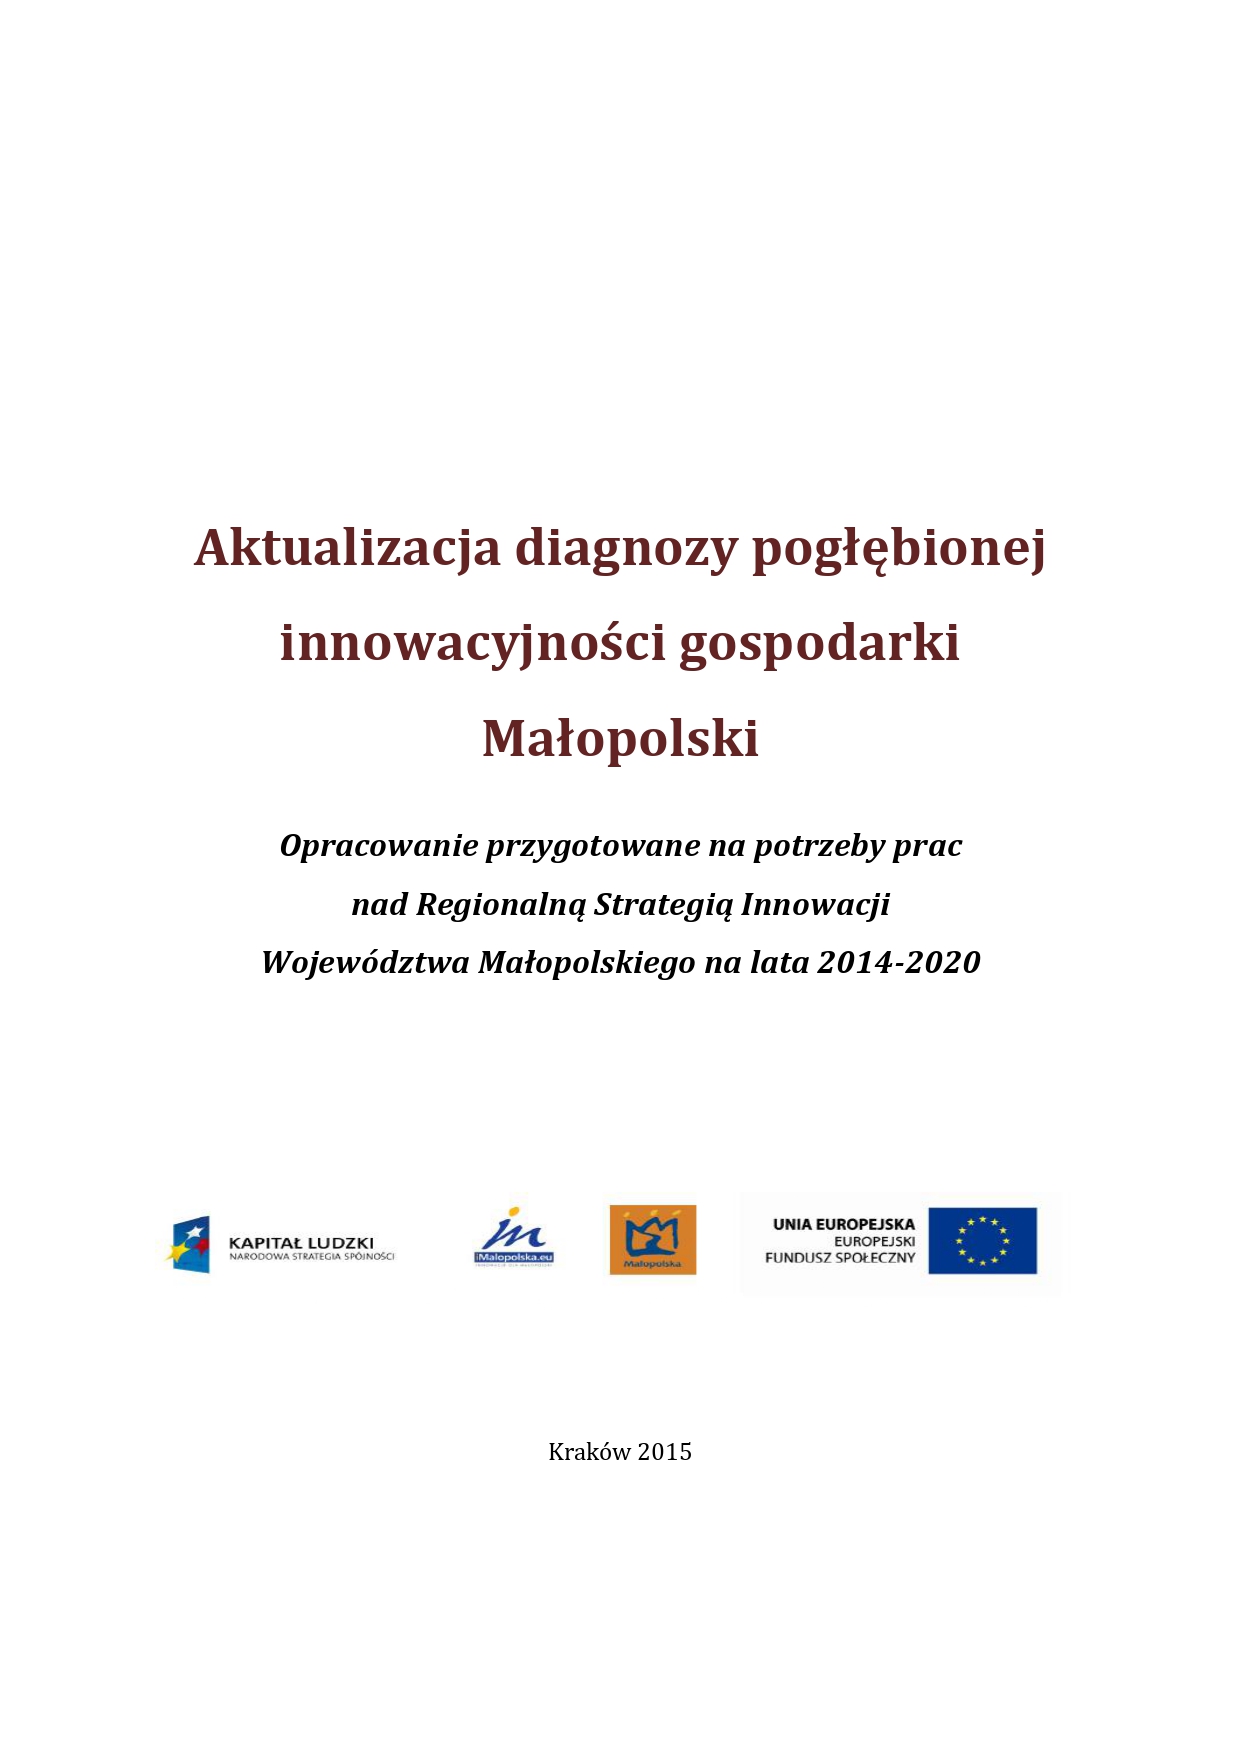 Analiza diagnozy pogłebionej innowacyjności gospodarki Małopolski